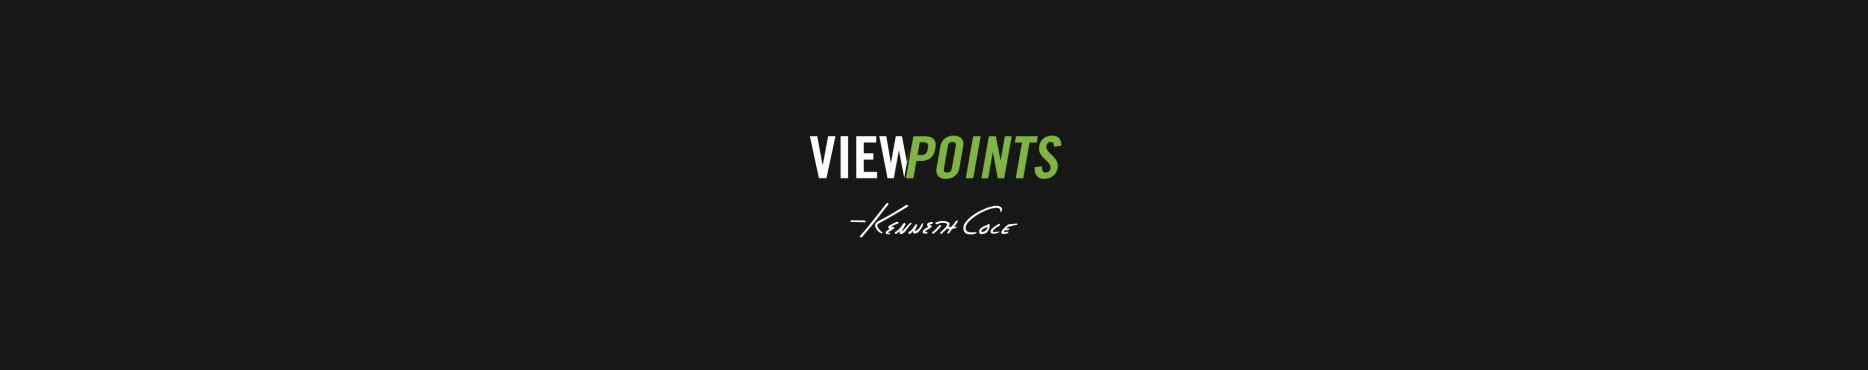 viewpoints_jpg_header.jpg